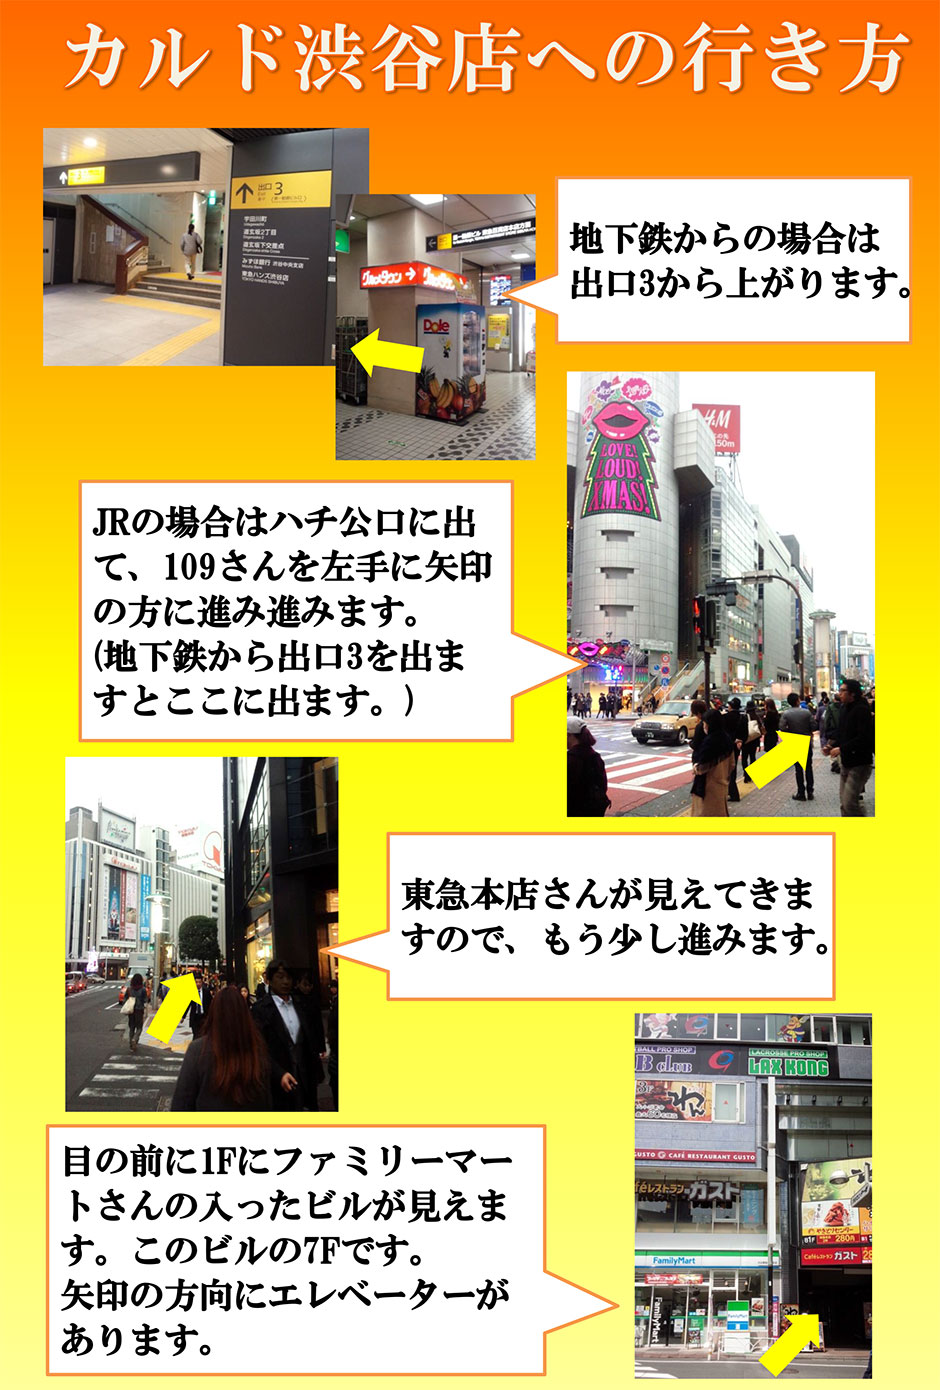 カルド渋谷への行き方：地下鉄からの場合は出口1から上がります→JRの場合はハチ公口に出て、109さんを左手に矢印の方向に進みます(地下鉄から出口3を出ますとここに出ます)→東急本店さんが見えてきますので、もう少し進みます→目の前に1Fファミリーマートさんの入ったビルが見えます。このビルの7Fです。矢印の方向にエレベーターがあります